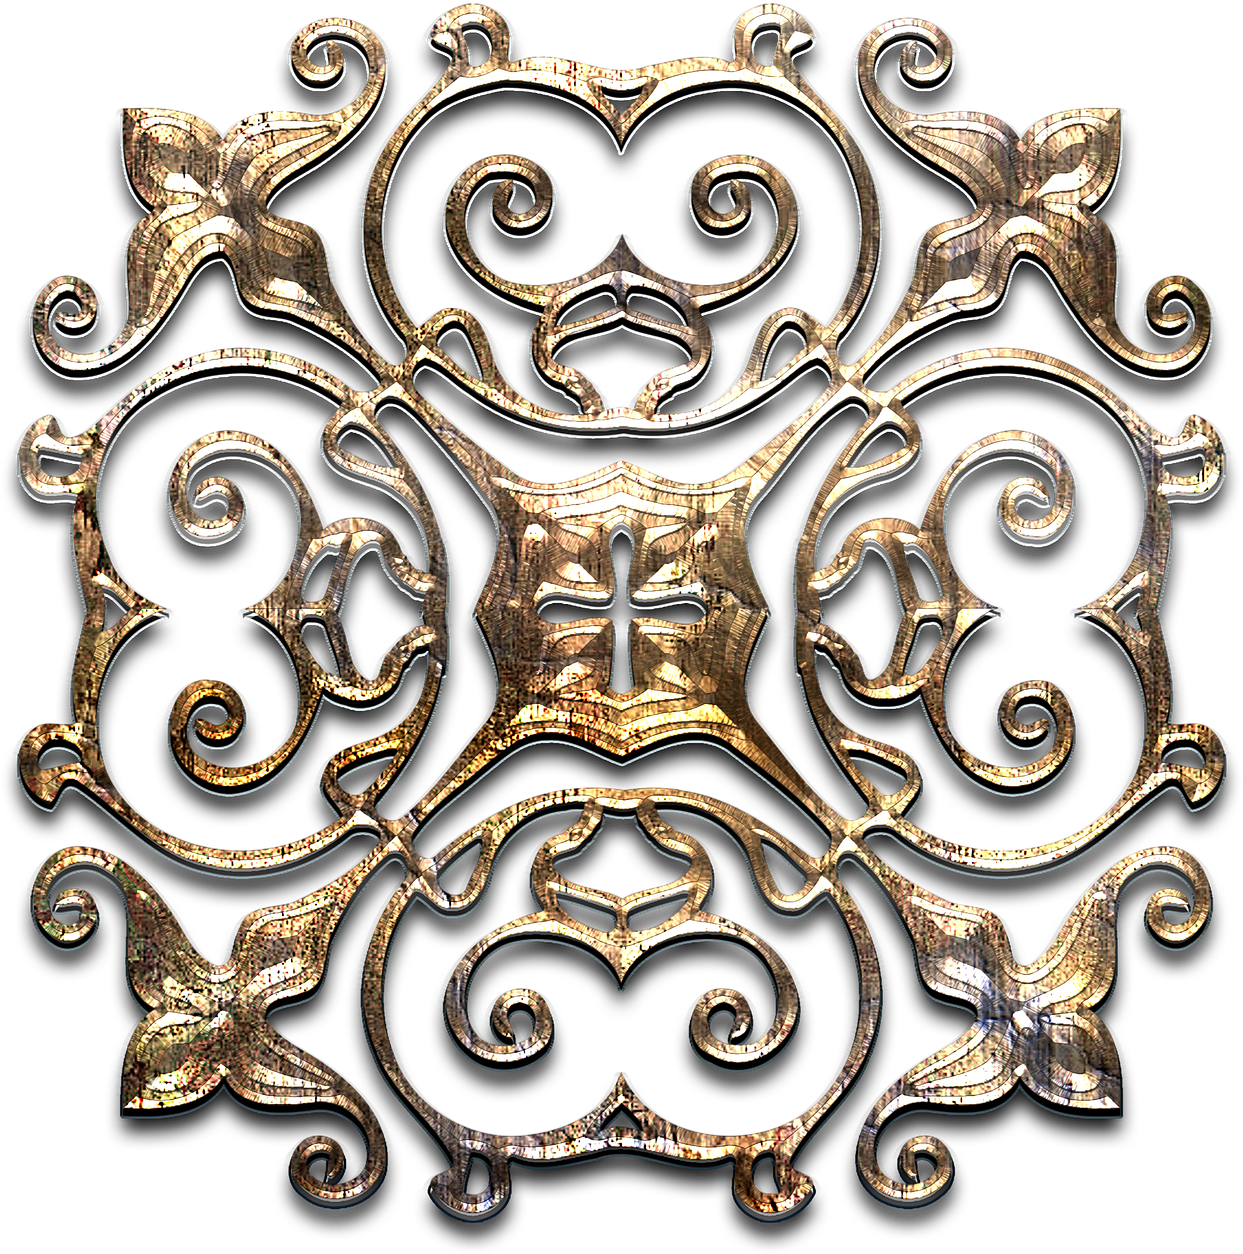 Ornate Golden Scrollwork Design PNG image